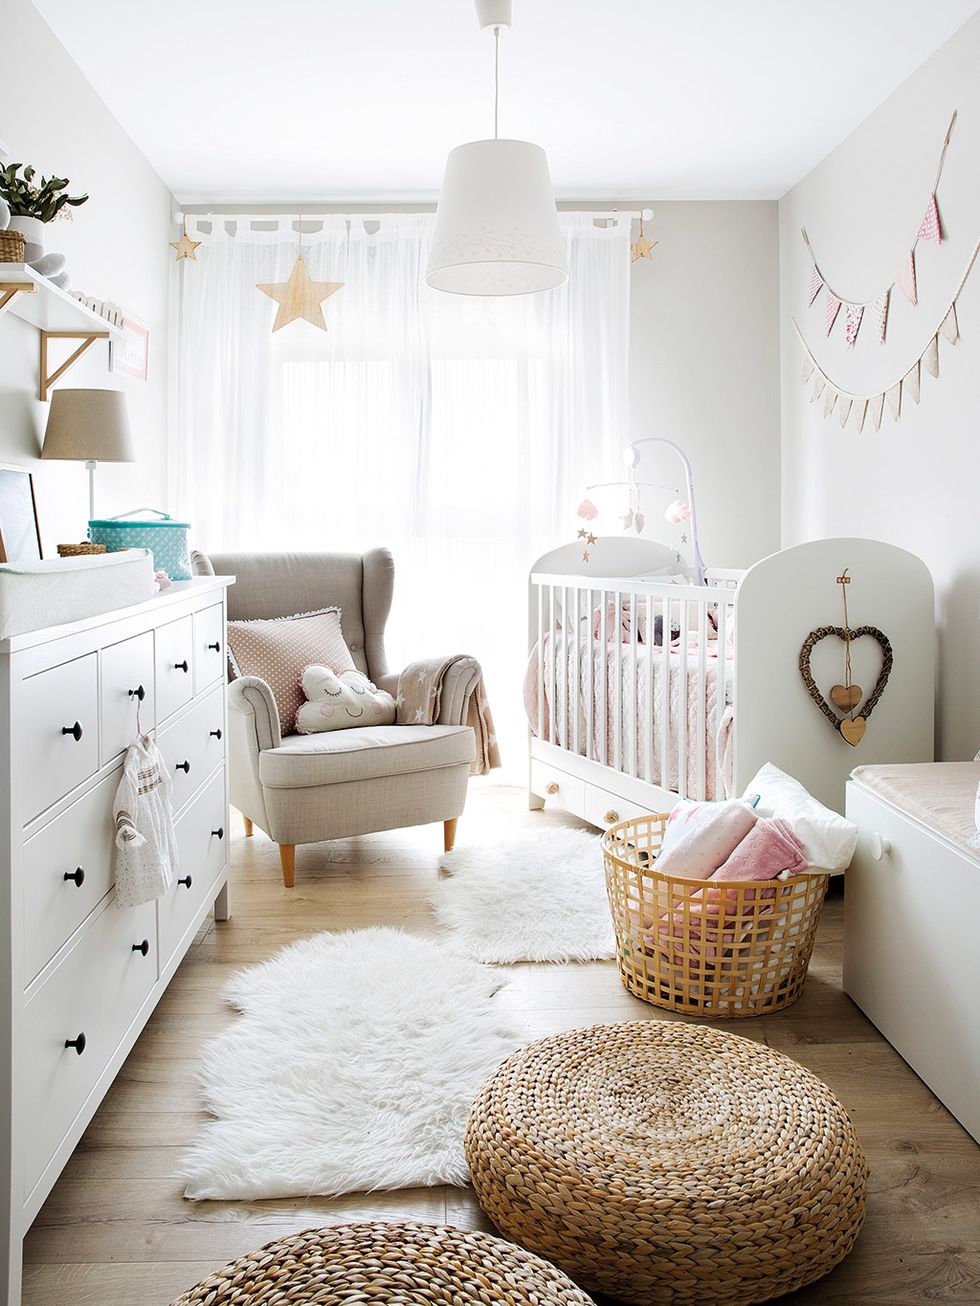 Cómo decorar una habitación infantil - Muebles El Pilar